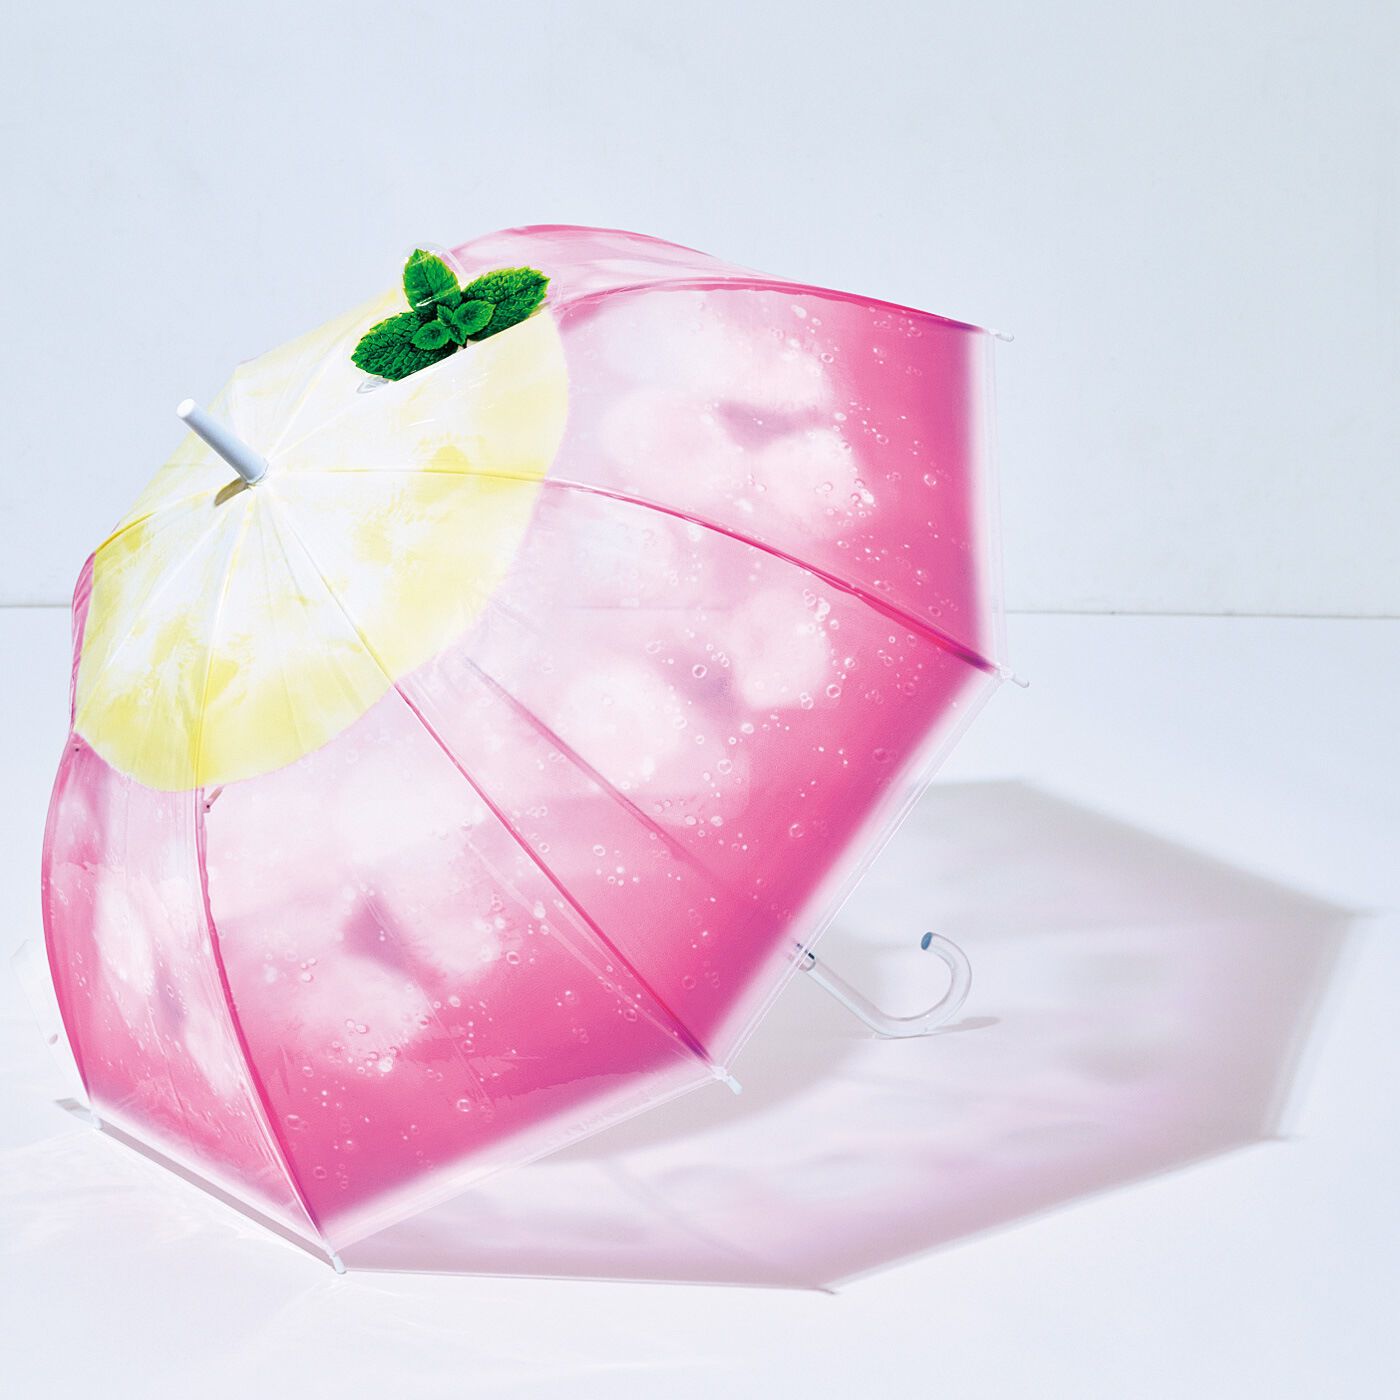 クリームソーダの透明傘〈ピンククリームソーダ〉